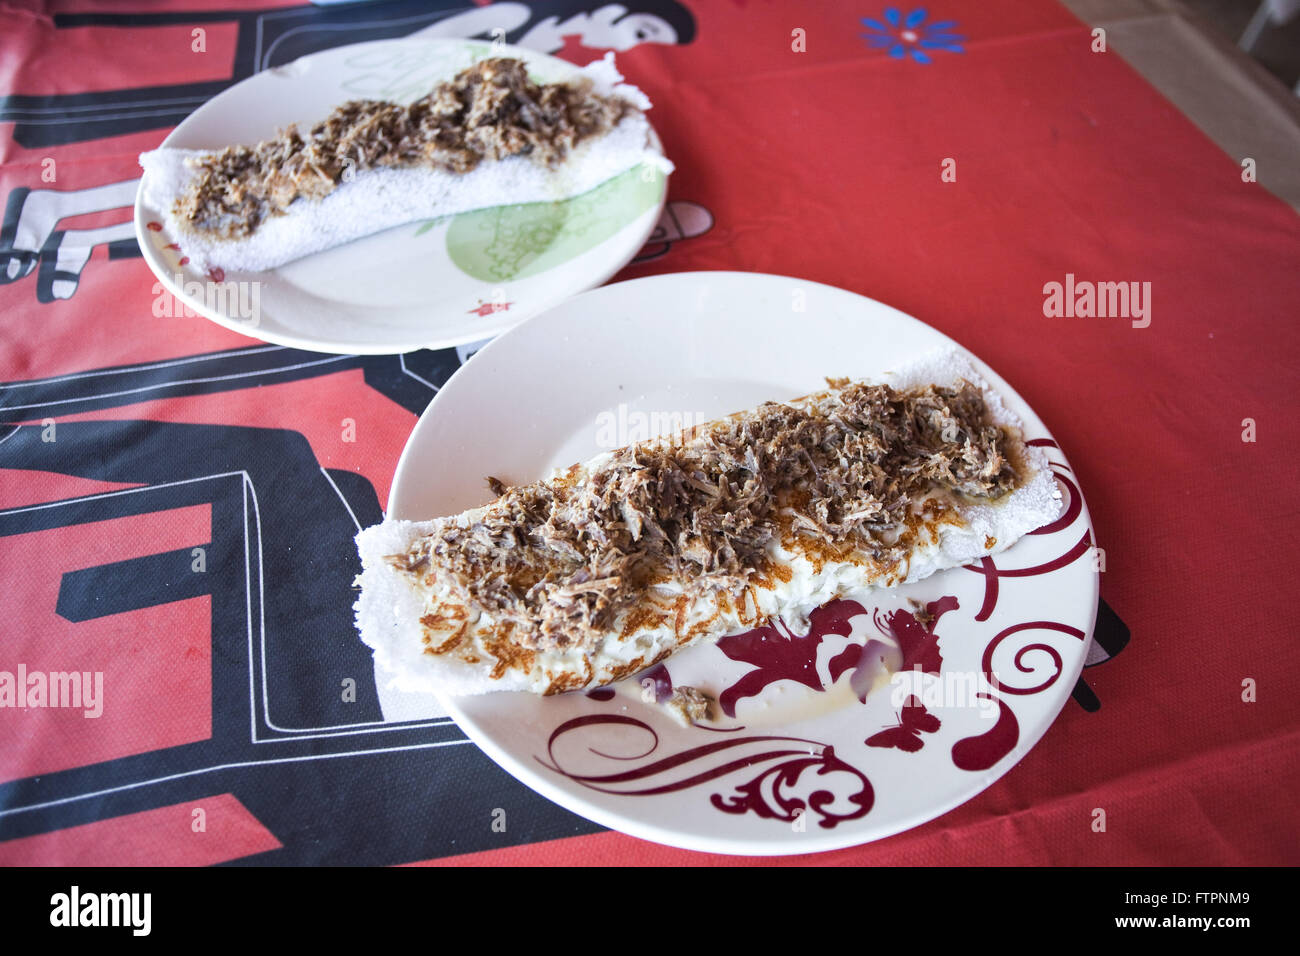 Tapioca con sacudidas - comida típica del noreste de goma base yuca Foto de stock